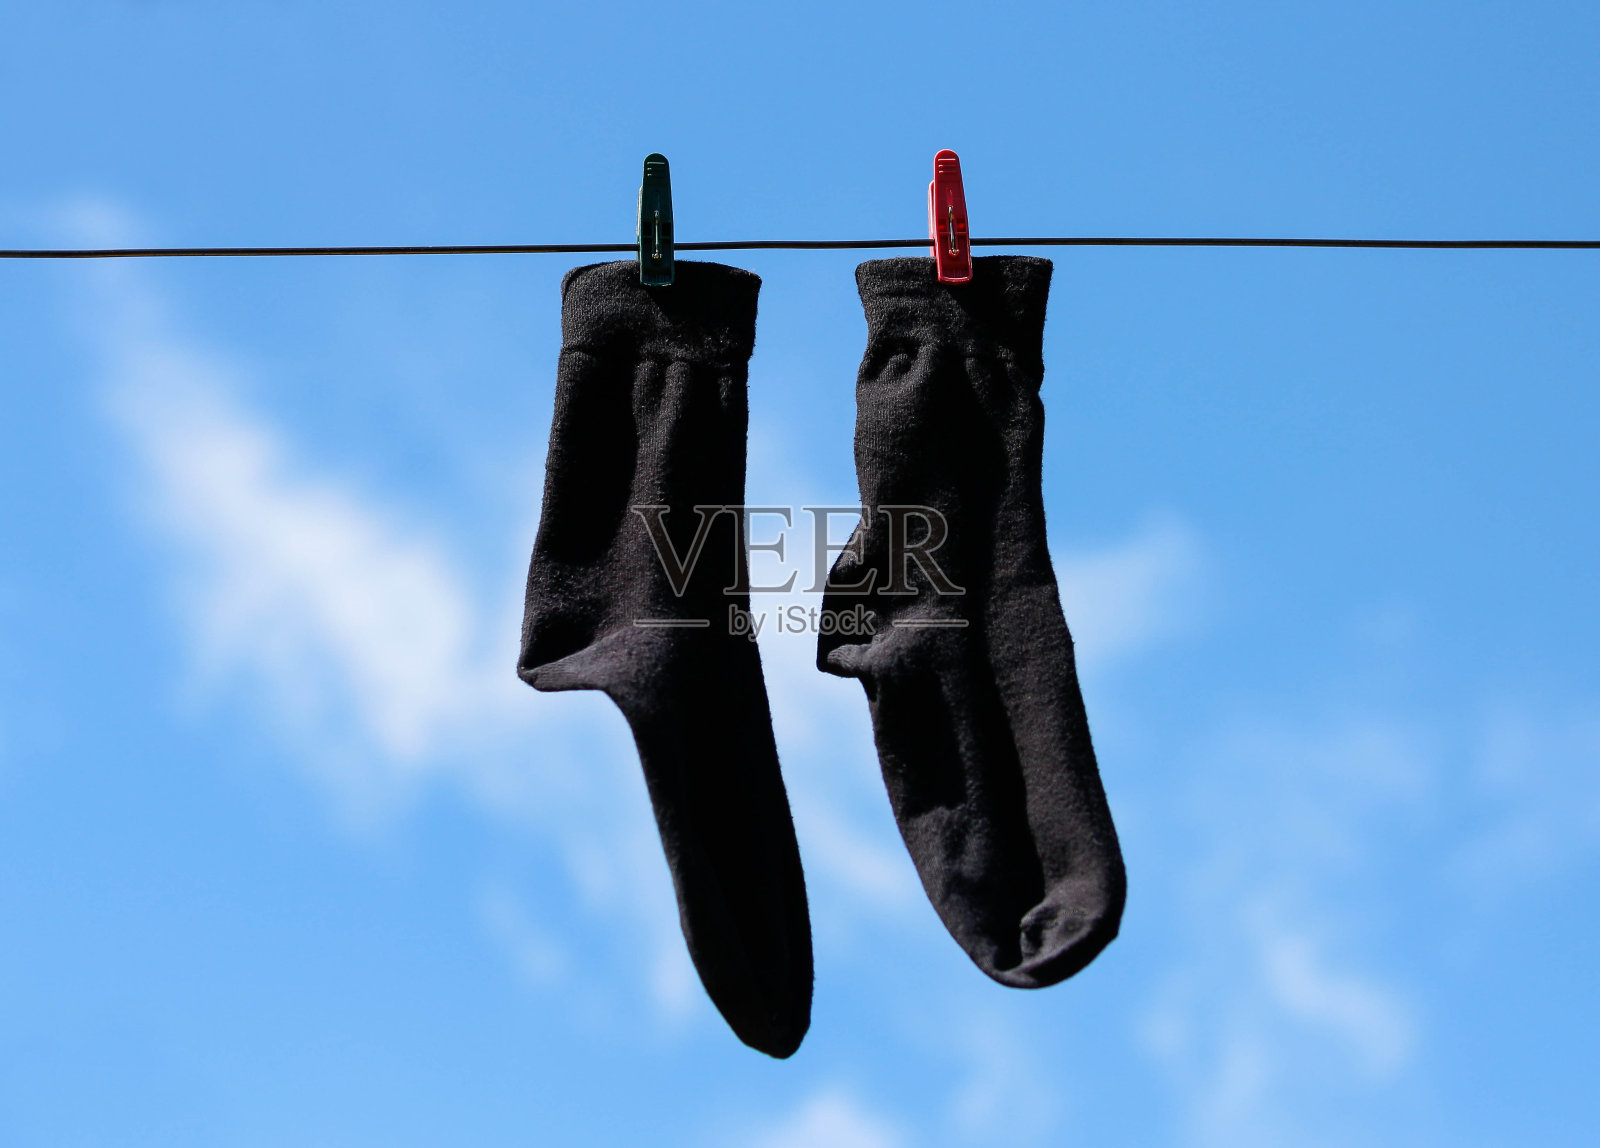 黑袜子用晒衣夹挂在晒衣绳上晾晒。特写镜头。在蓝天白云的背景上照片摄影图片